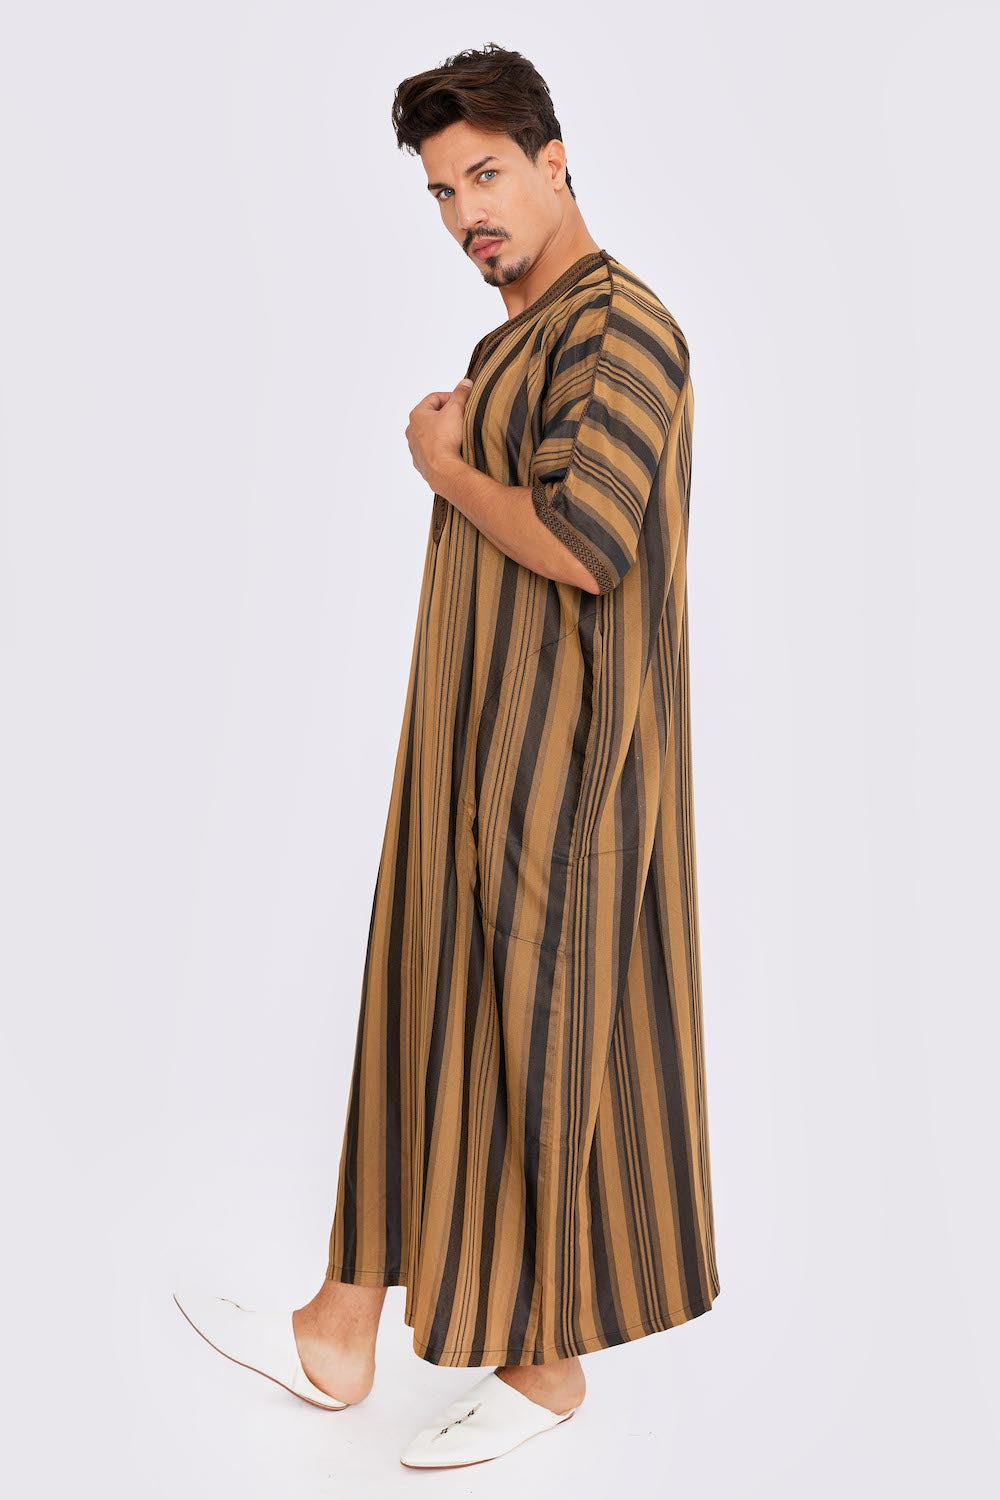 Gandoura Men's Short Sleeve Long Striped Thobe in Black & Brown